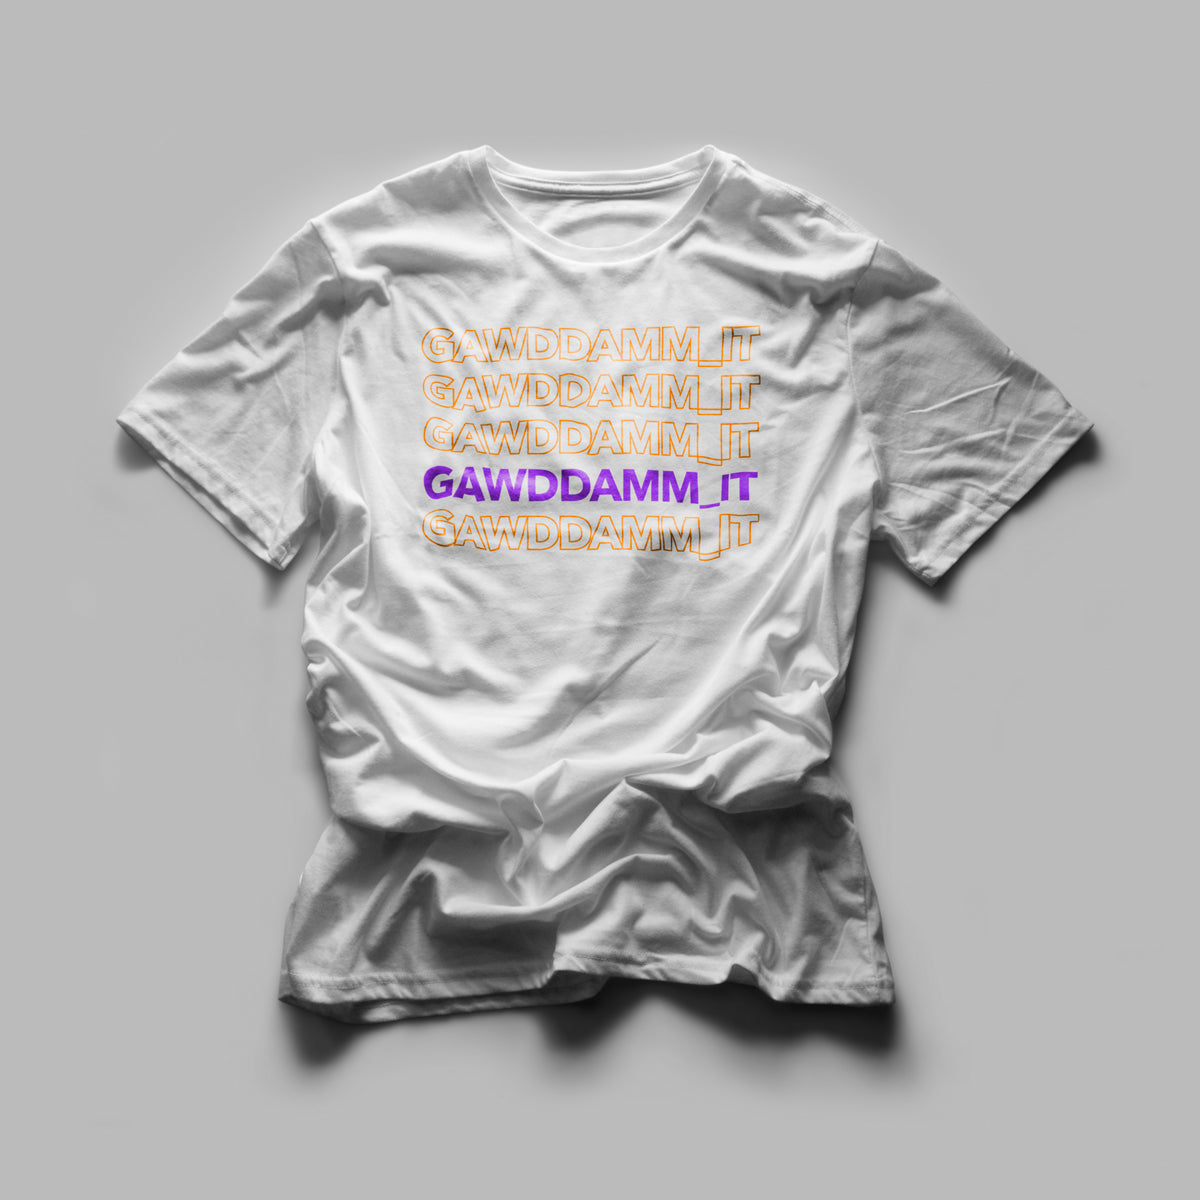 Gawddamm_it - Row Tshirt